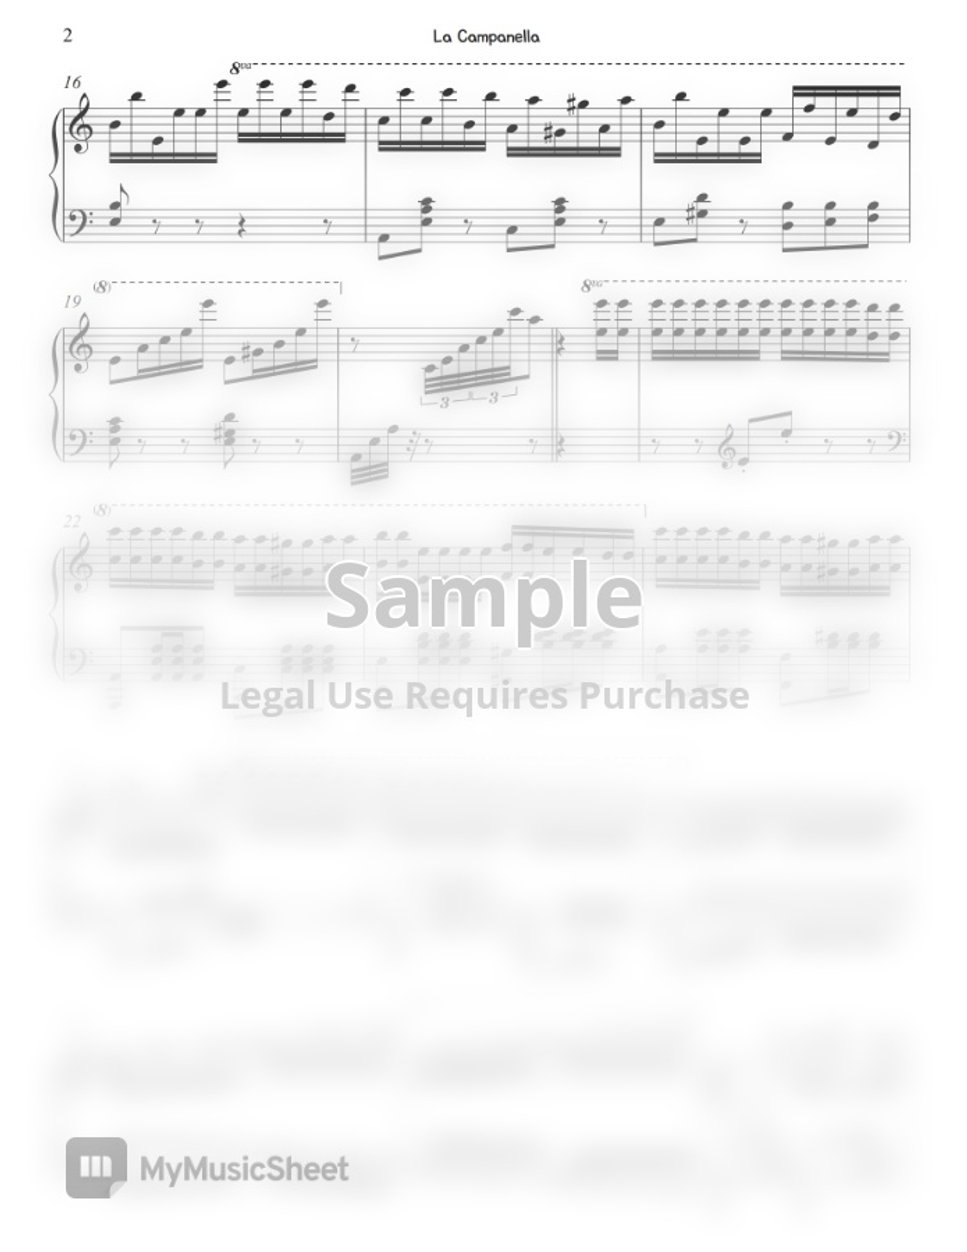 F. Liszt (리스트) - La Campanella (라 캄파넬라) (Easy ver. Aminor) by Gloria L.